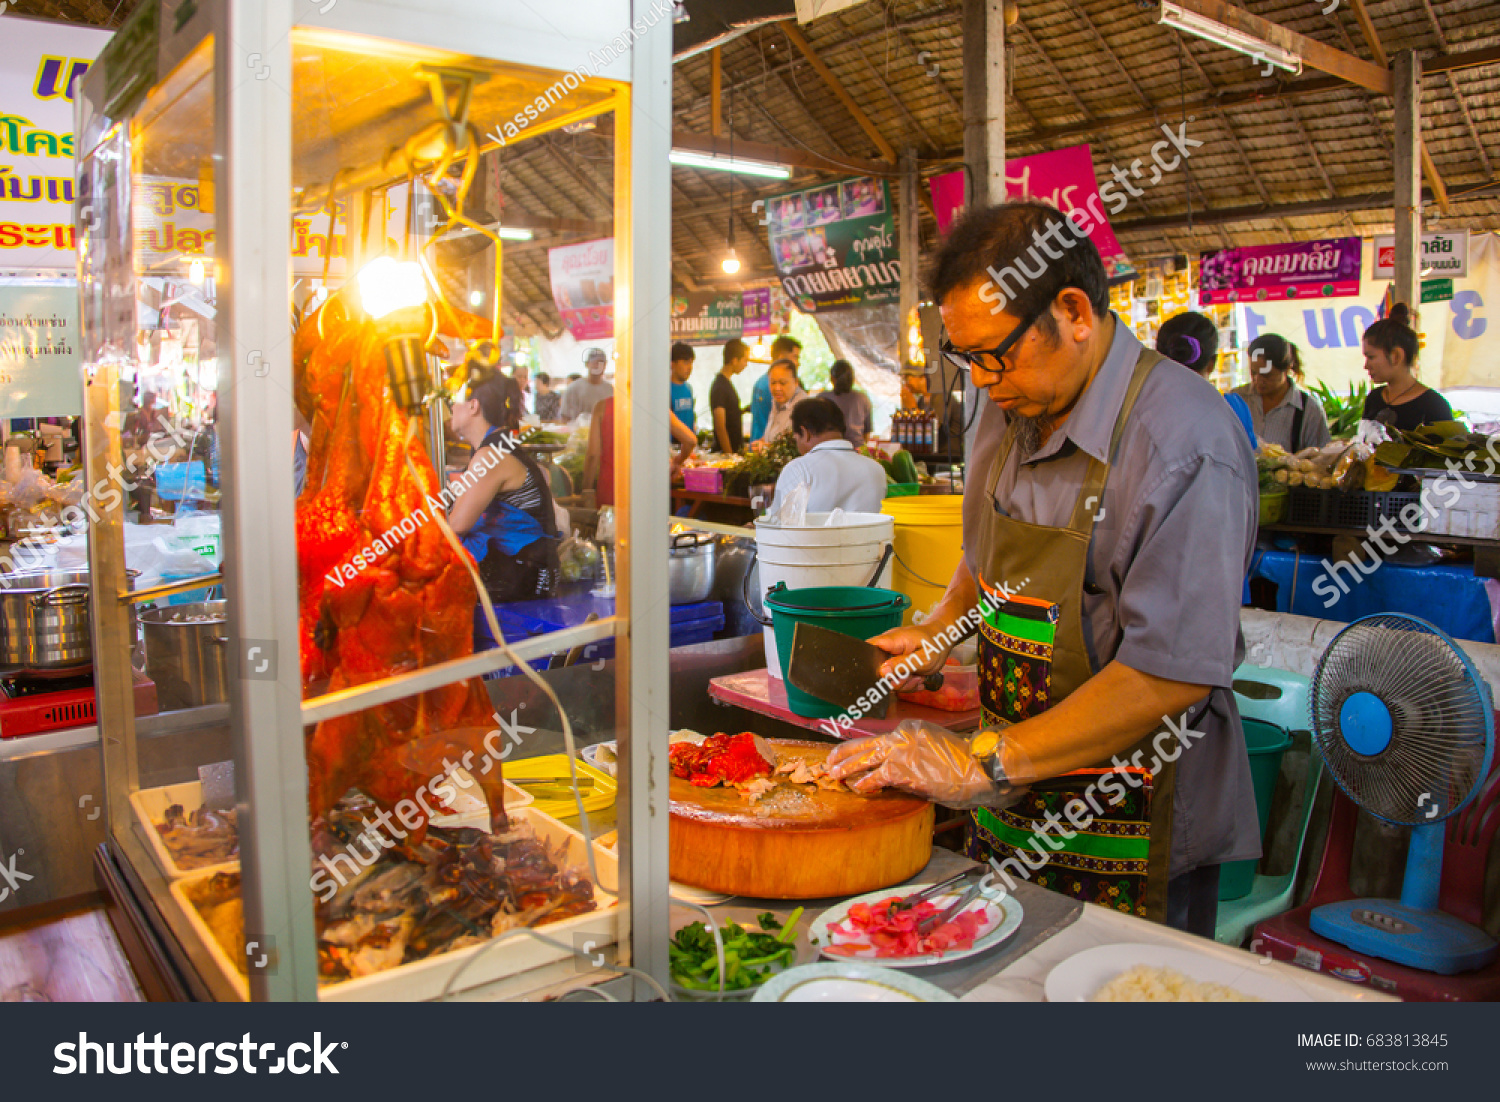 Bangkok, THAILAND -April 04 2017 - A man sell roasted duck at local flea market #683813845